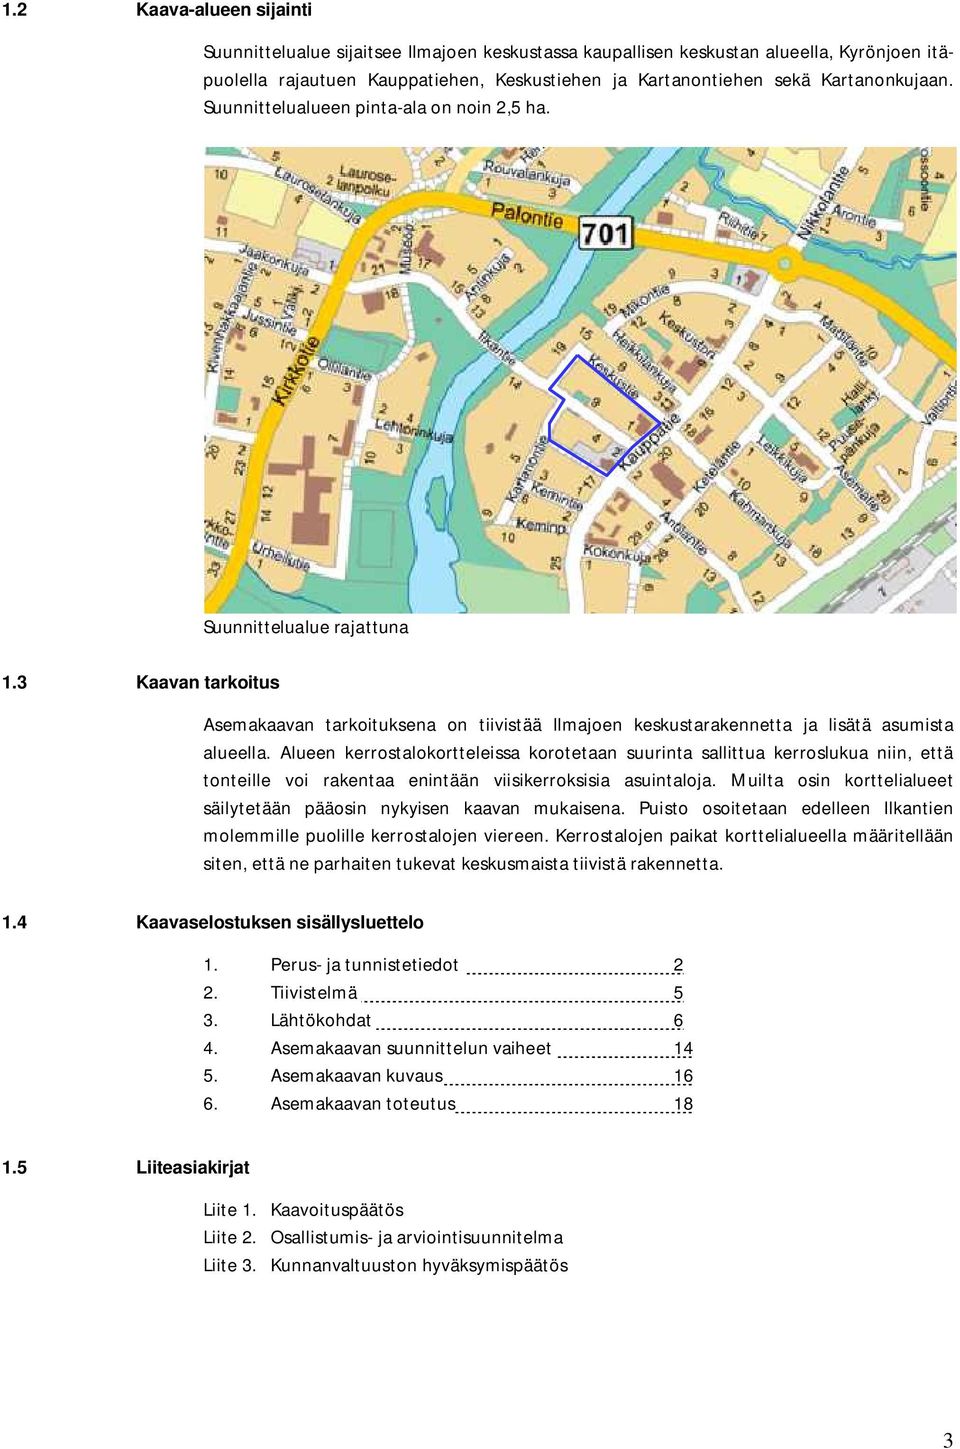 3 Kaavan tarkoitus Asemakaavan tarkoituksena on tiivistää Ilmajoen keskustarakennetta ja lisätä asumista alueella.